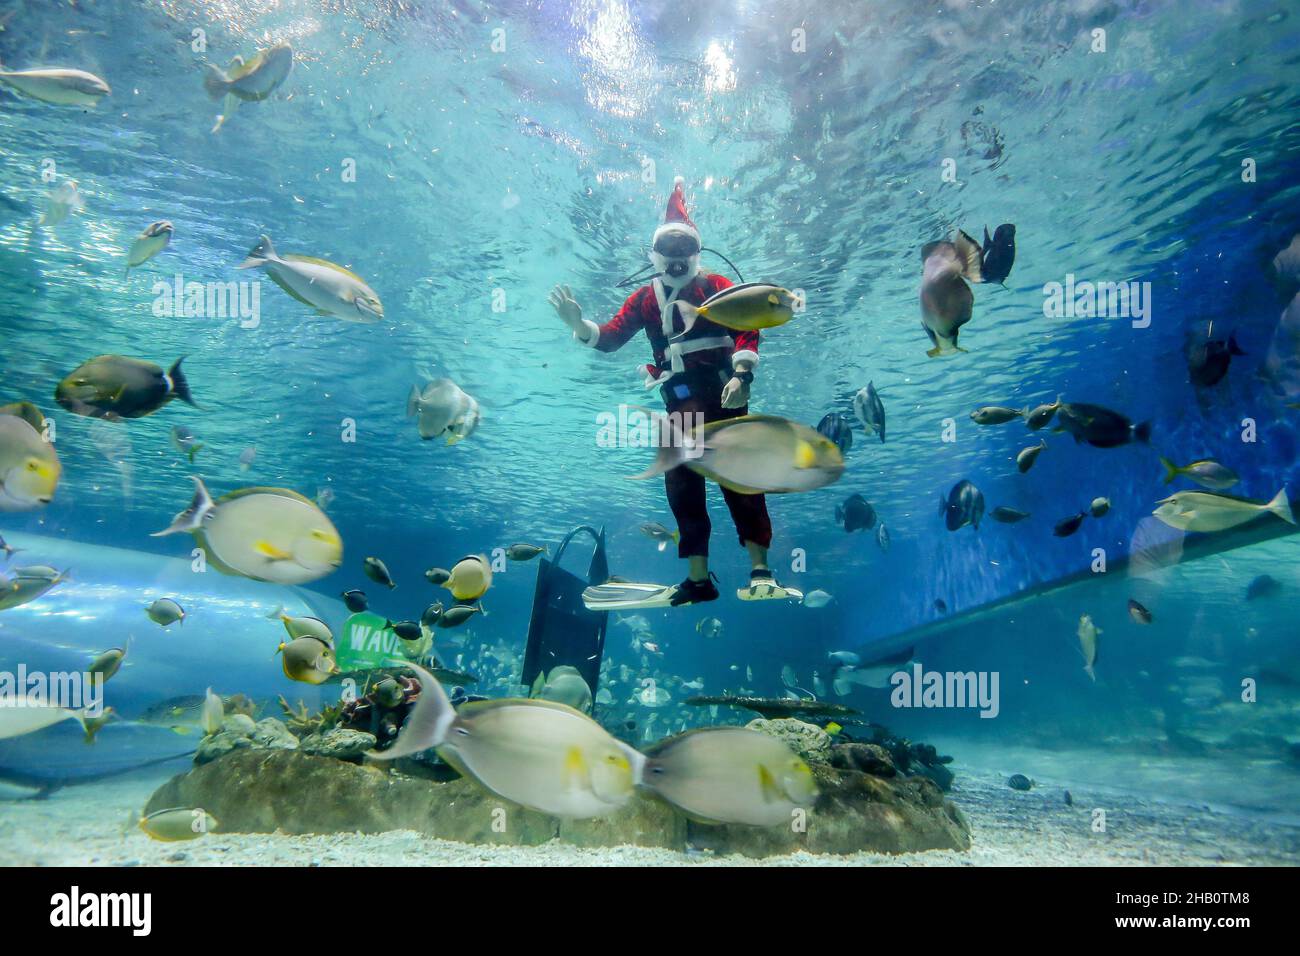 Manille.16th décembre 2021.Le 16 décembre 2021, un plongeur portant le costume du Père Noël nage avec des créatures marines à l'intérieur de l'aquarium du parc océanique de Manille, aux Philippines.Crédit: Rouelle Umali/Xinhua/Alamy Live News Banque D'Images